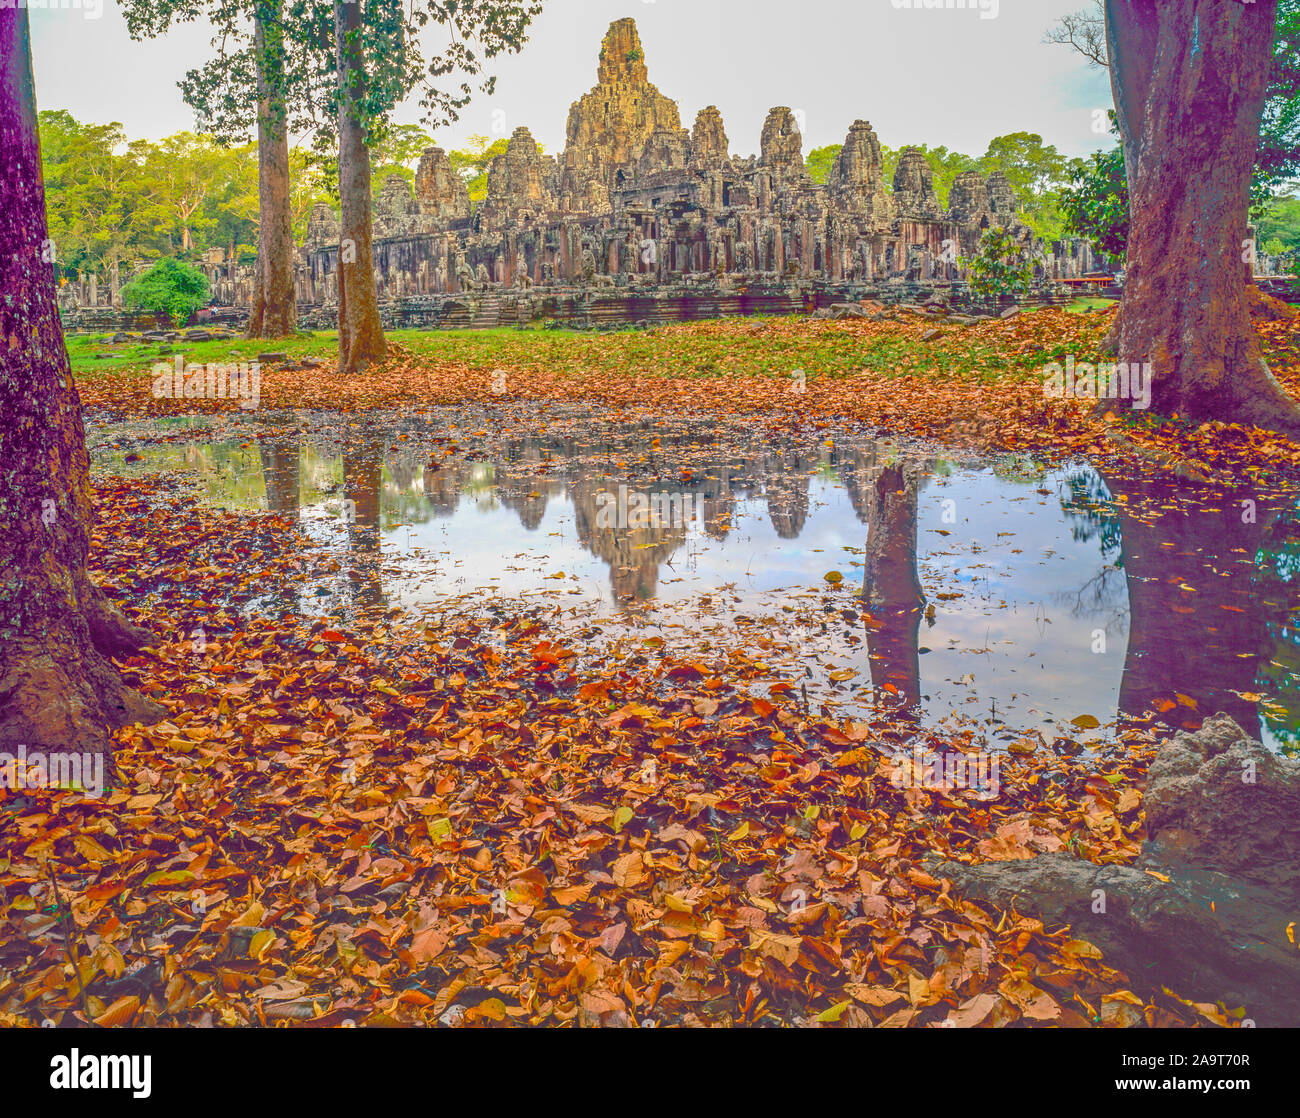 Templo Bayon reflexiones, el parque arqueológico de Angkor Watt, Camboya, la ciudad de Angkor Thom construido 100-1200 AD la cultura Khmer ruinas en la selva del sudeste asiático Foto de stock